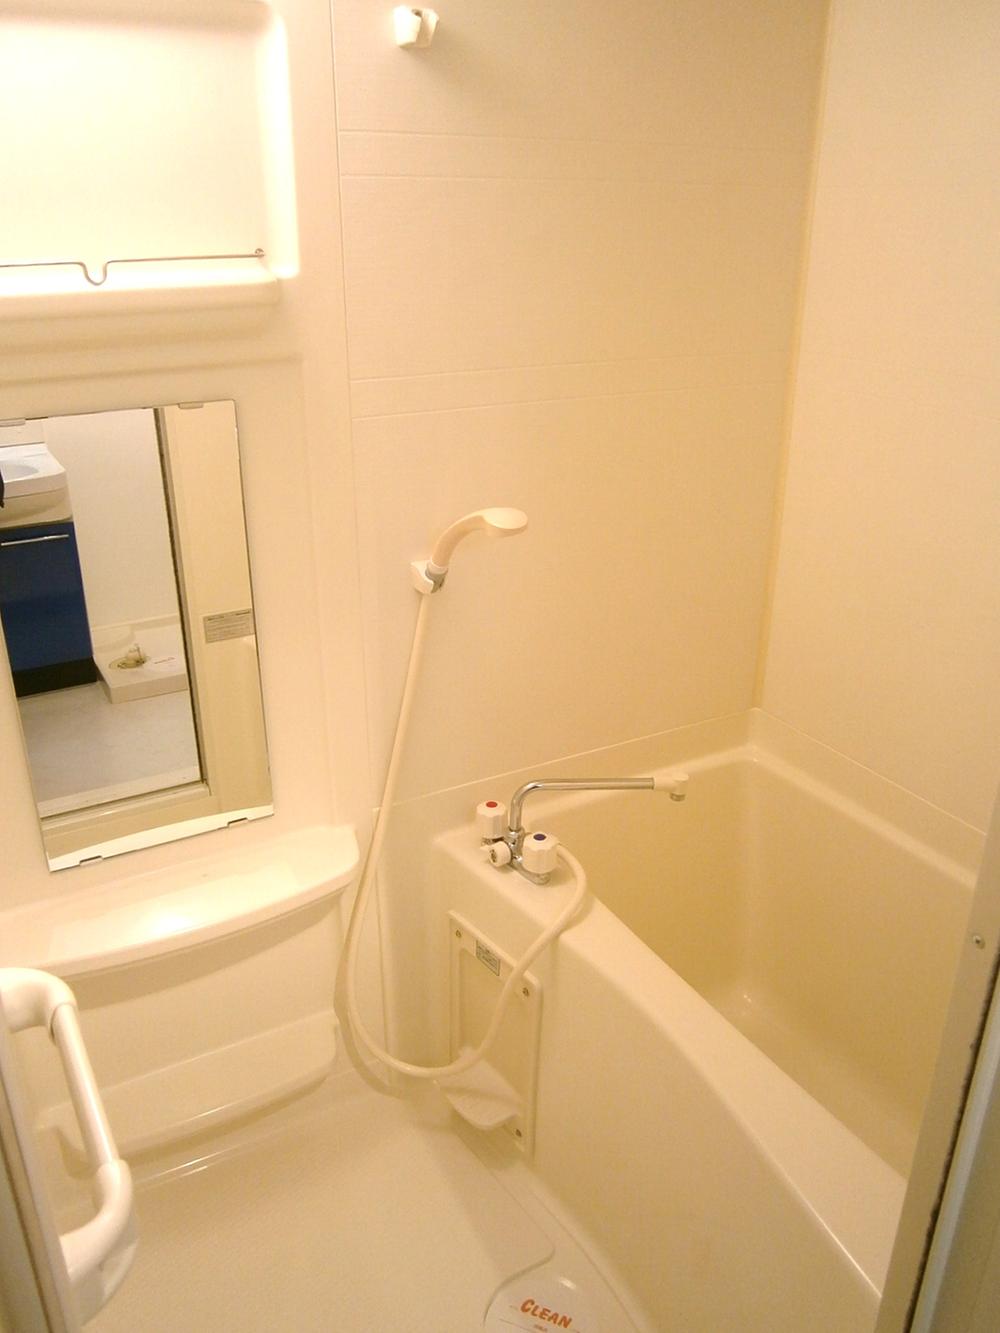 Bathroom. Indoor (11 May 2012) shooting